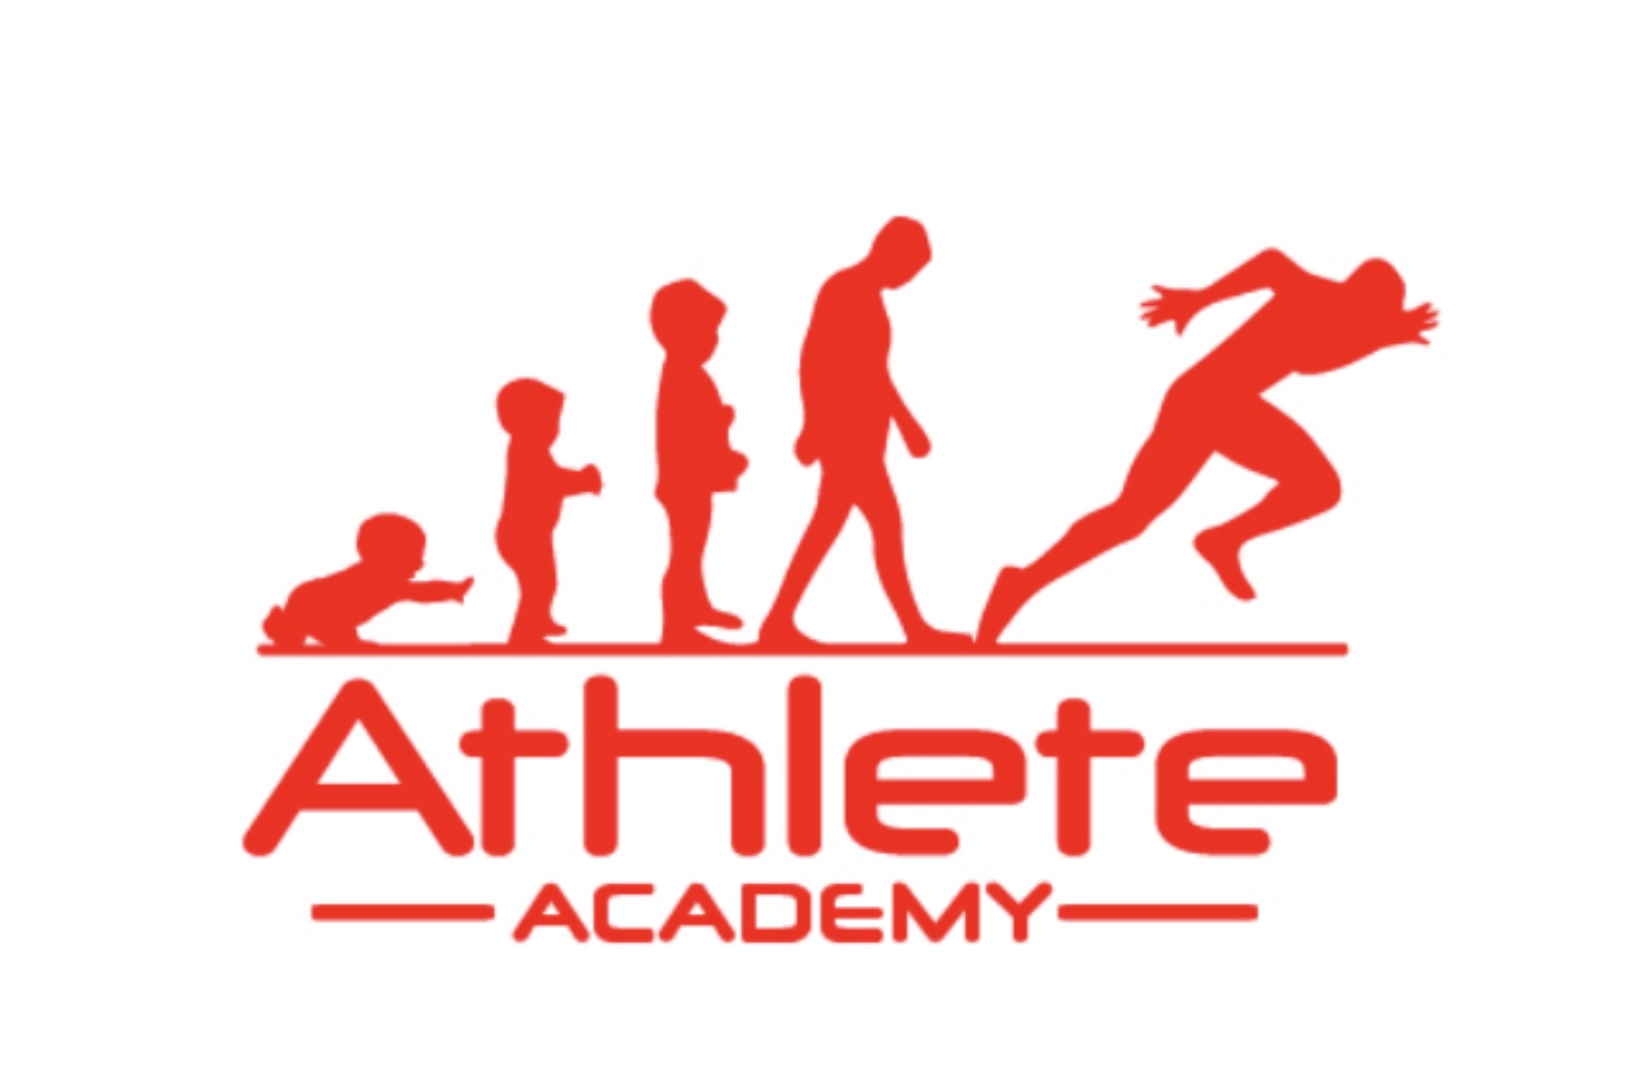 The Athlete Academy